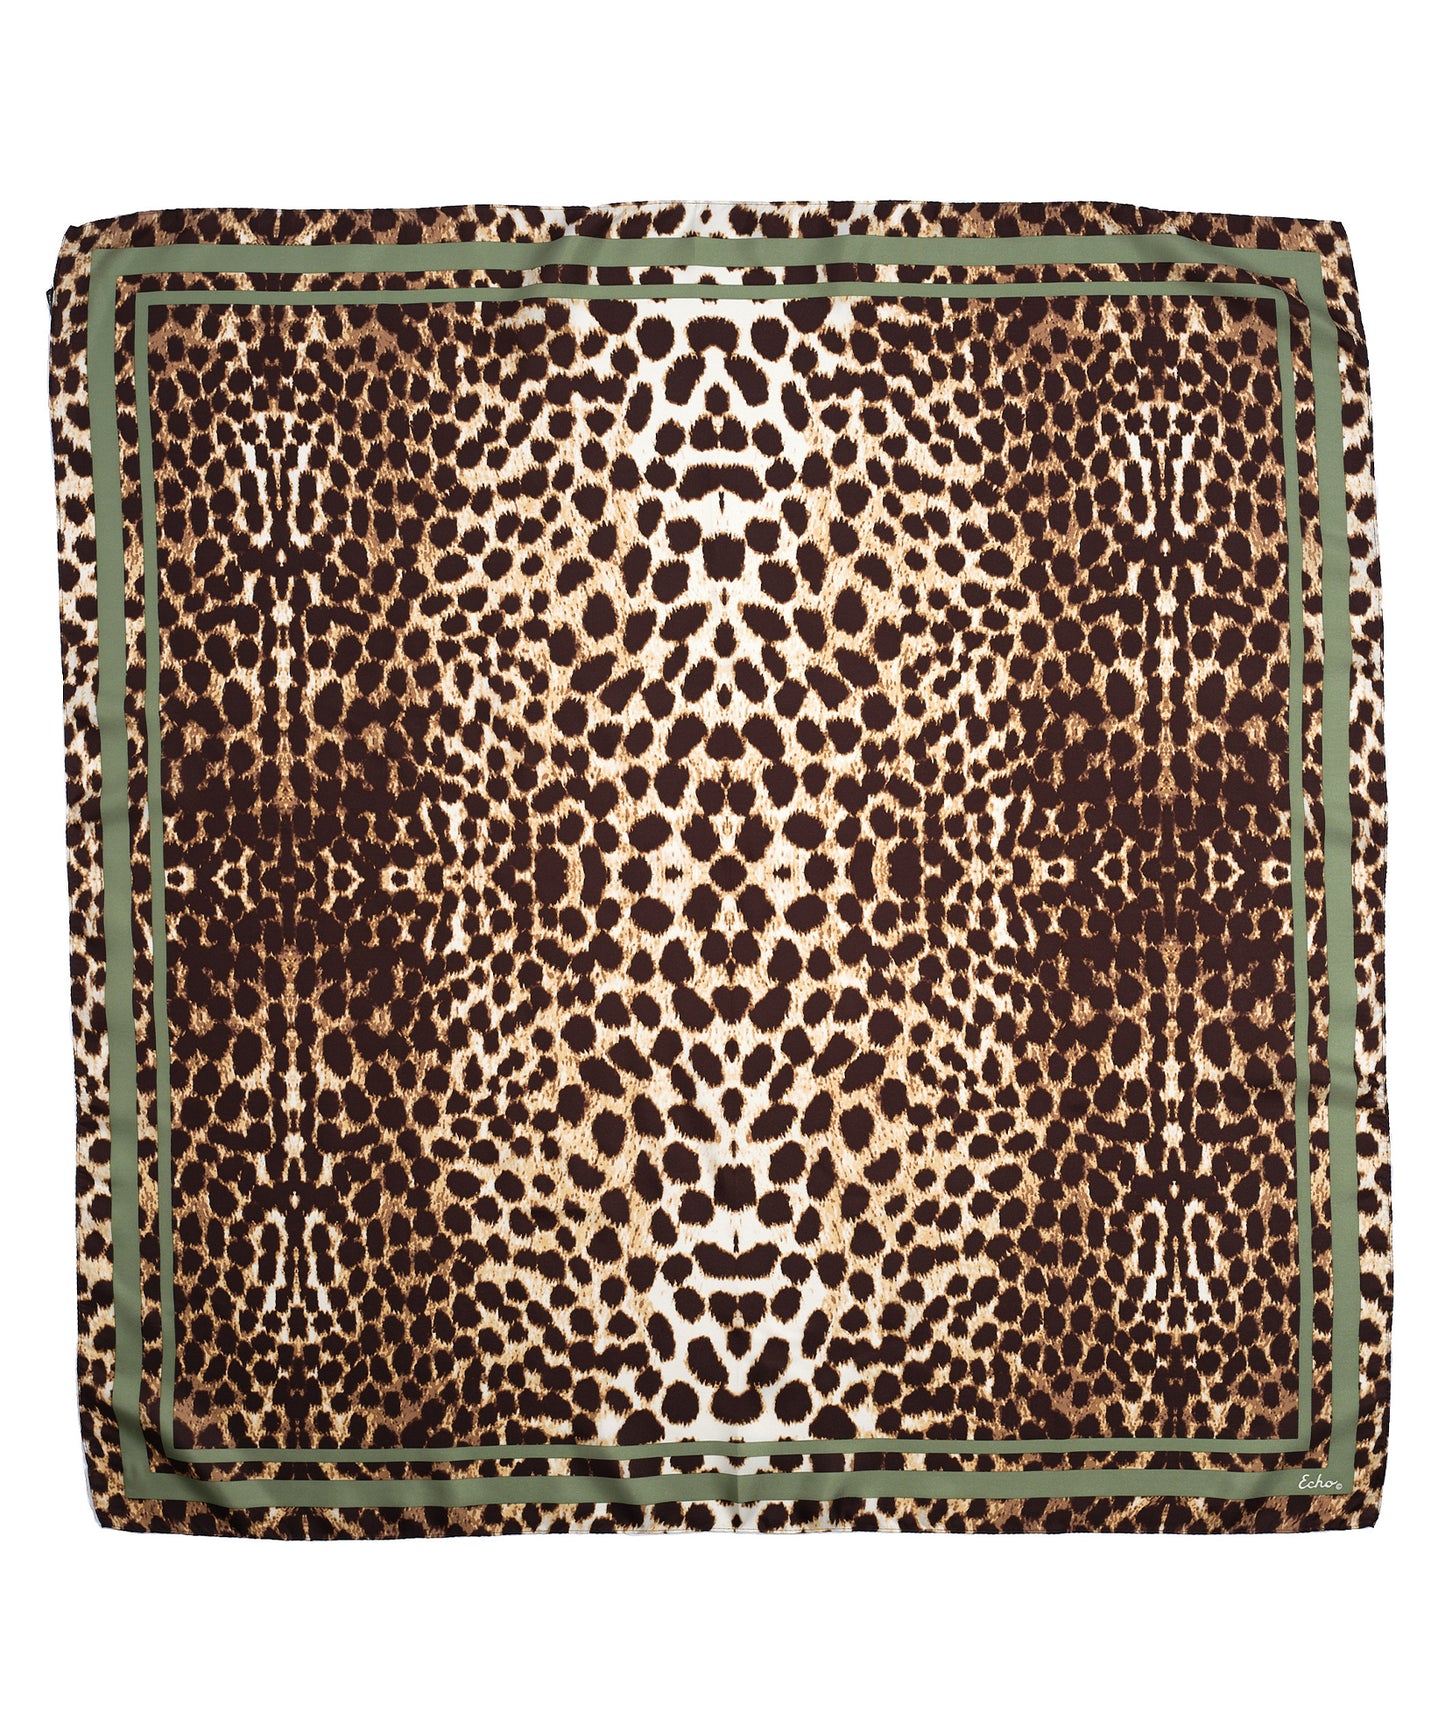 Leopard Silk Square in color Natural